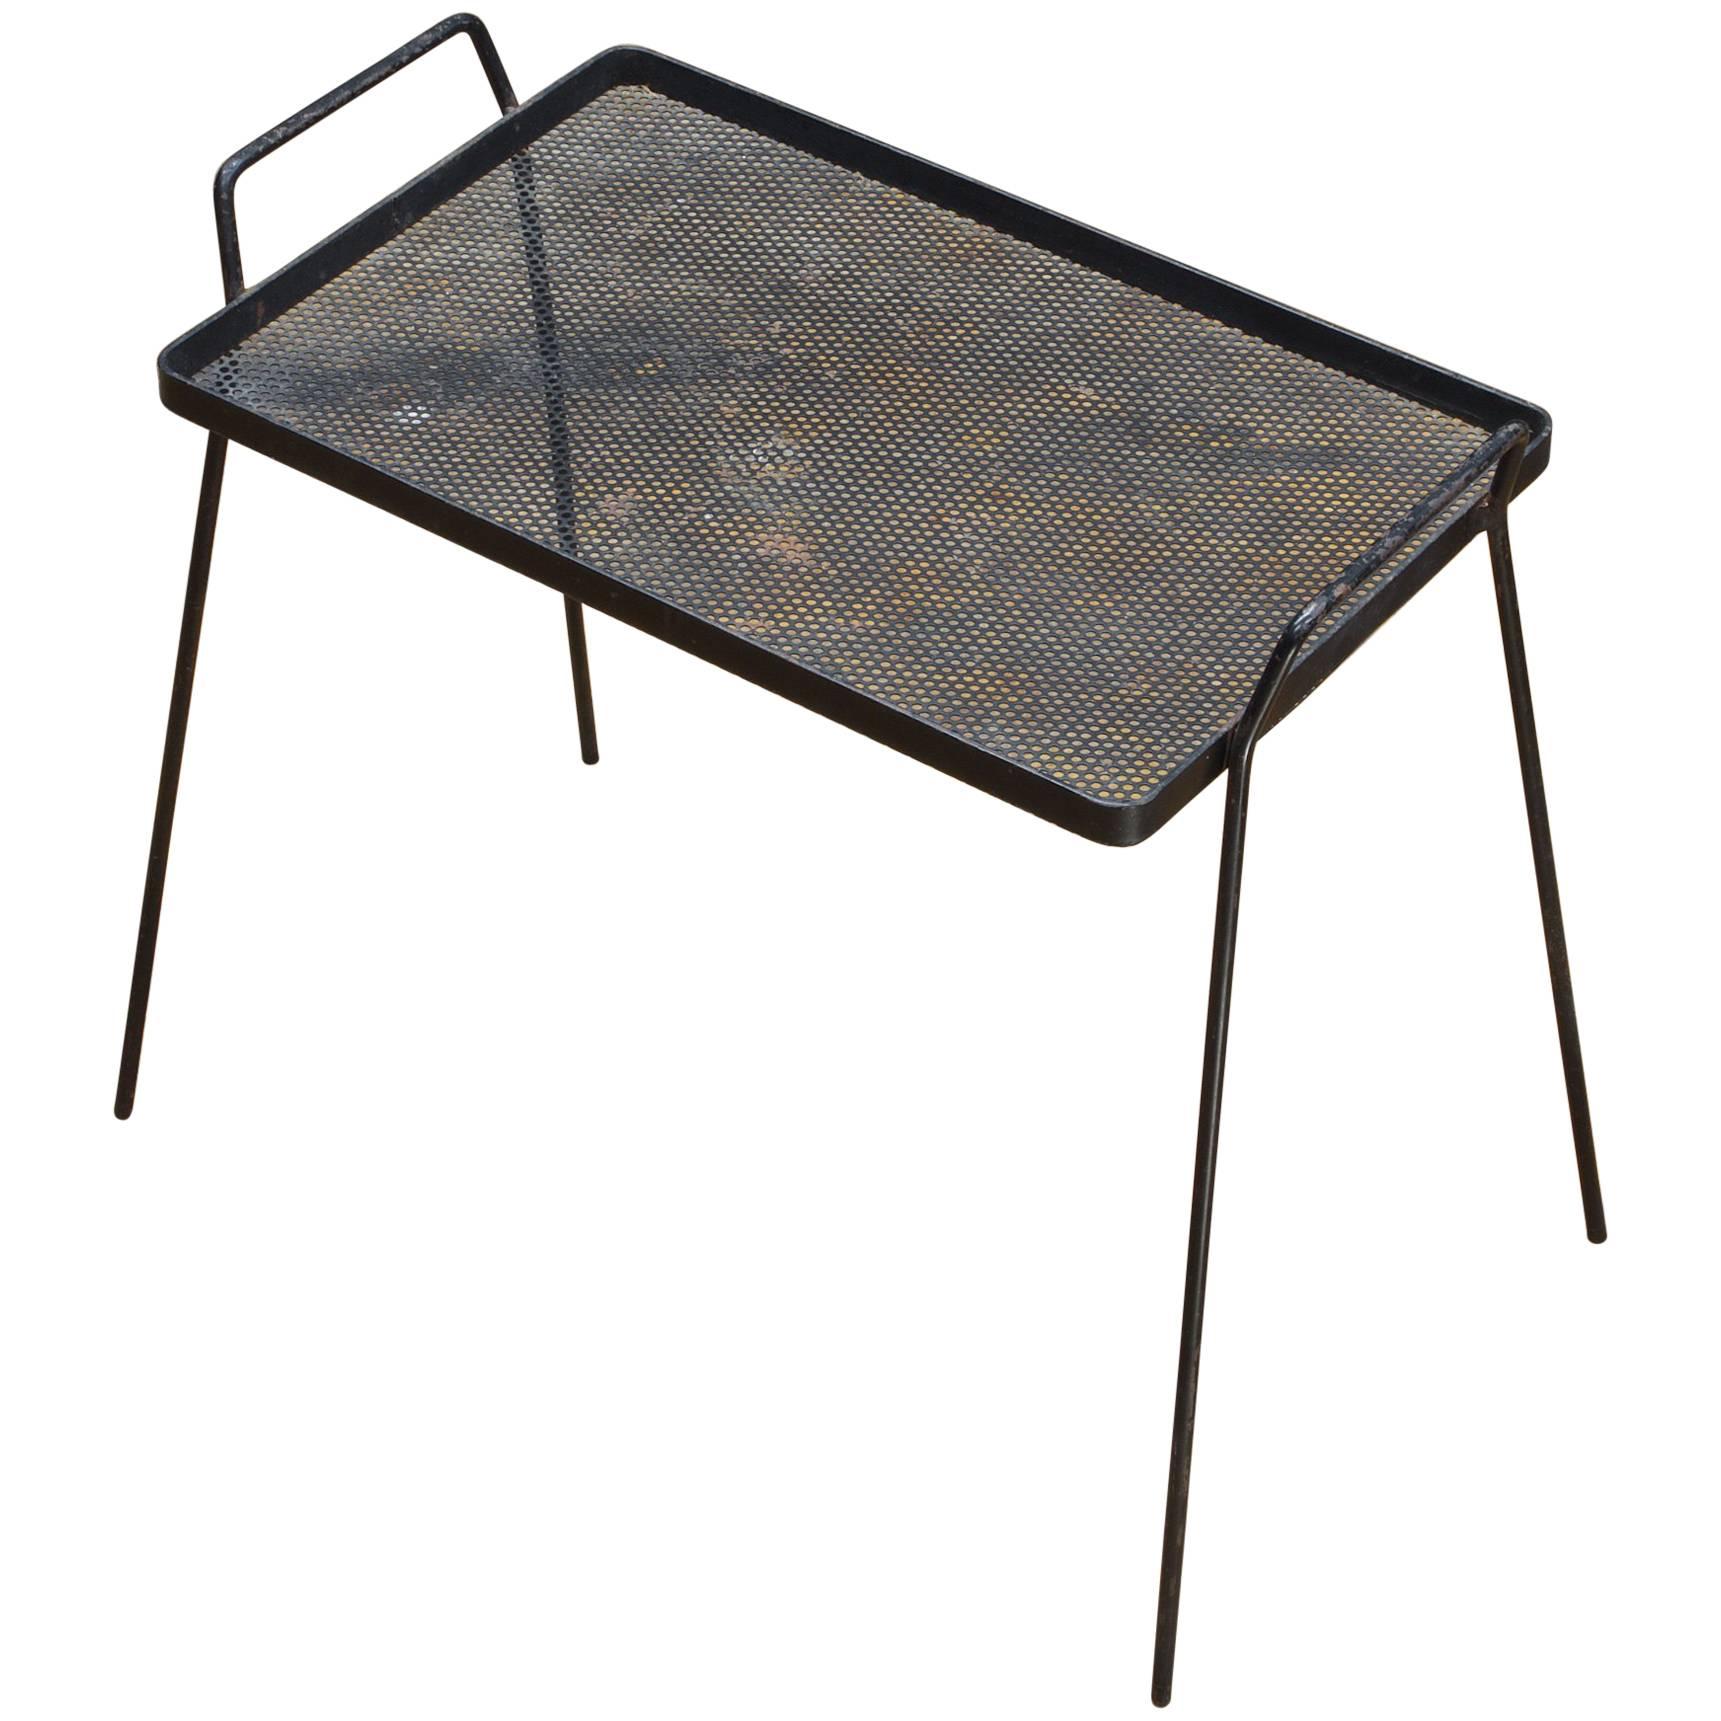 Table d'appoint Cabinmodern avec plateau de service en métal perforé des années 1950, Architectes minimalistes en vente